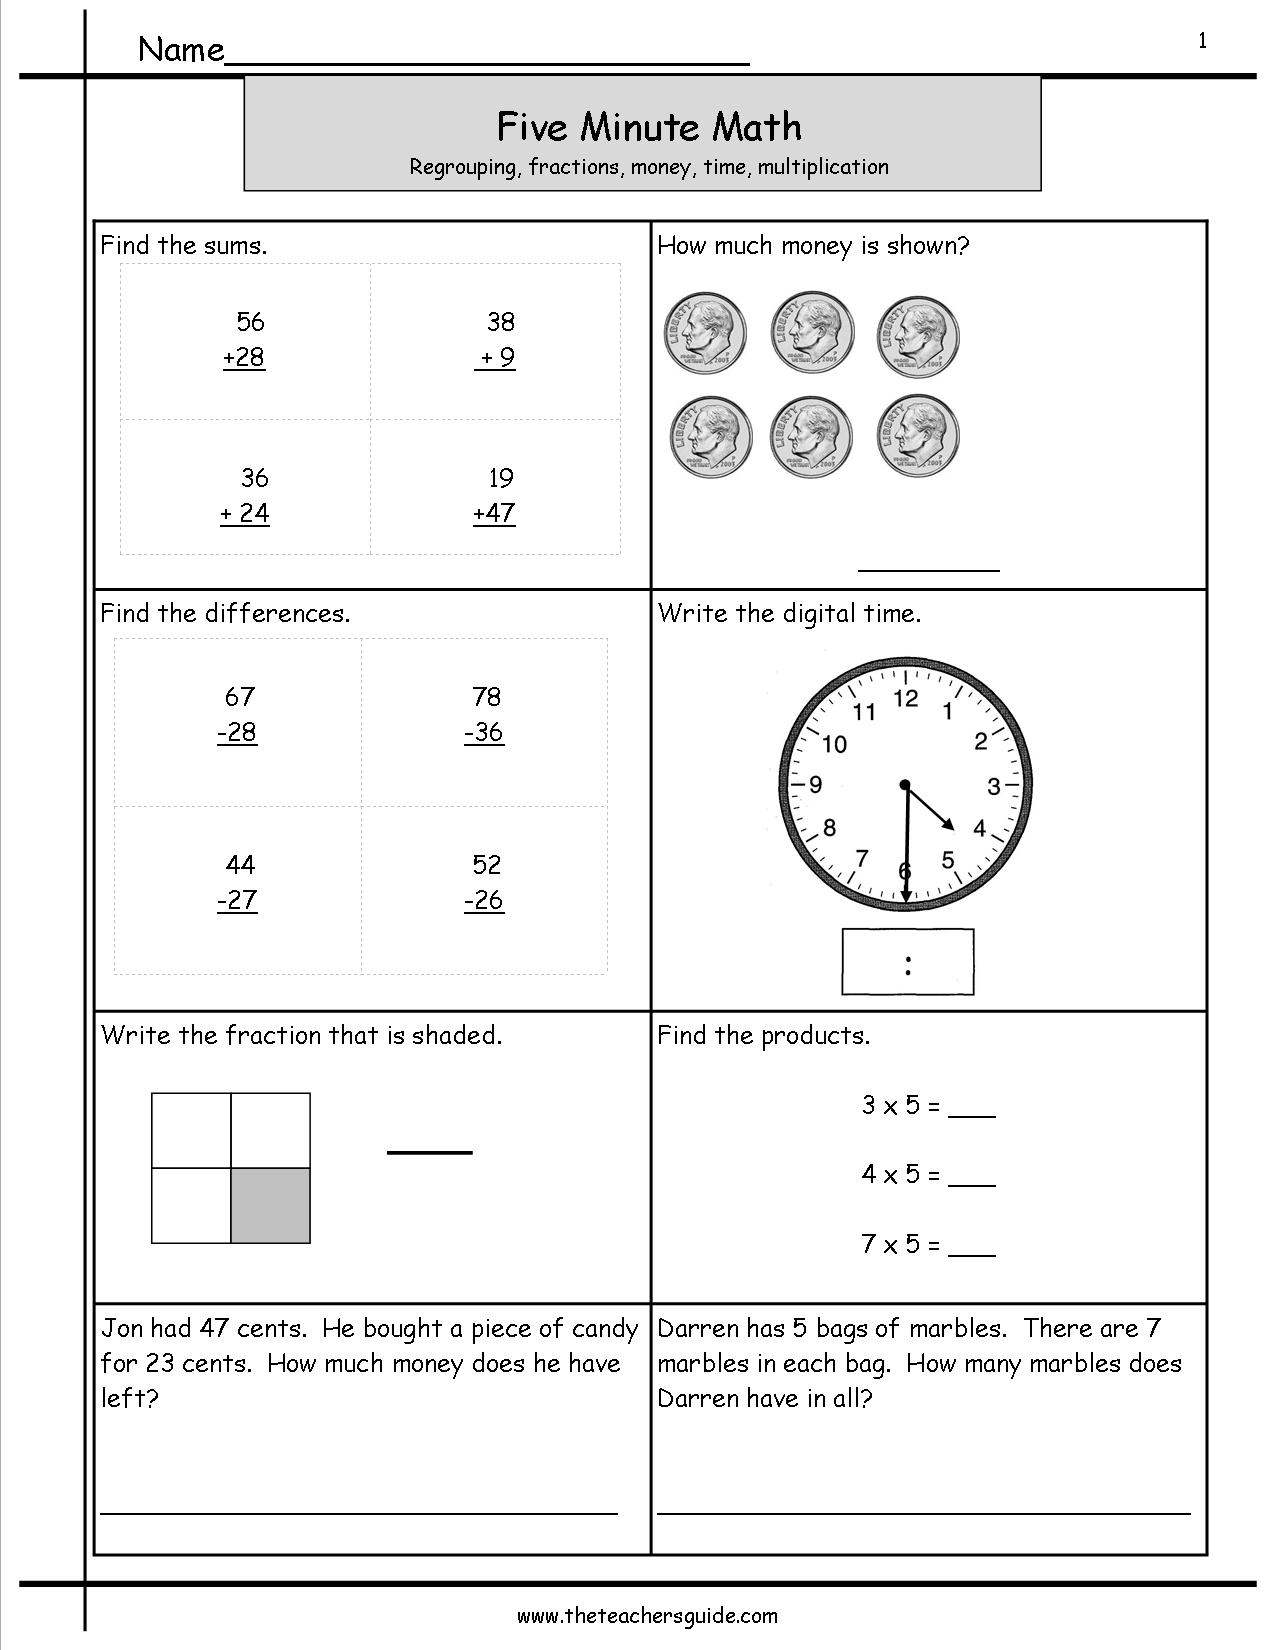 Five Minute Math Drills